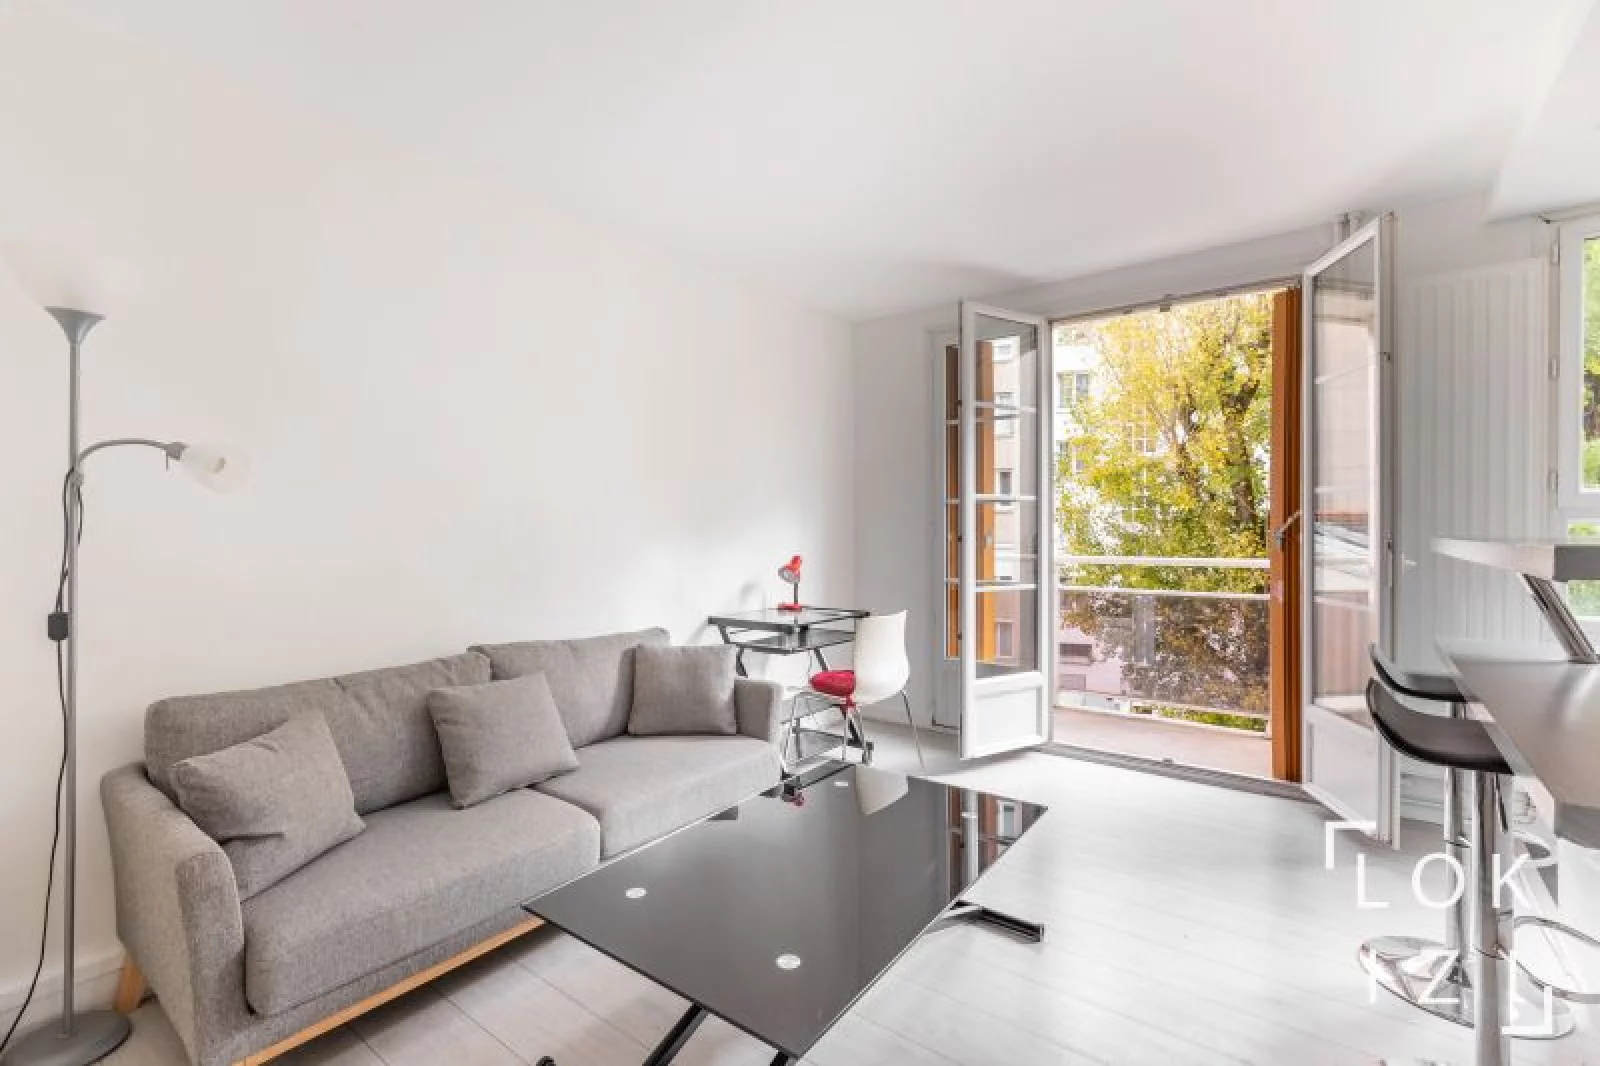 Location appartement meublé 2 pièces 36 m² (Issy-les-Moulineaux / Paris Sud-Ouest)